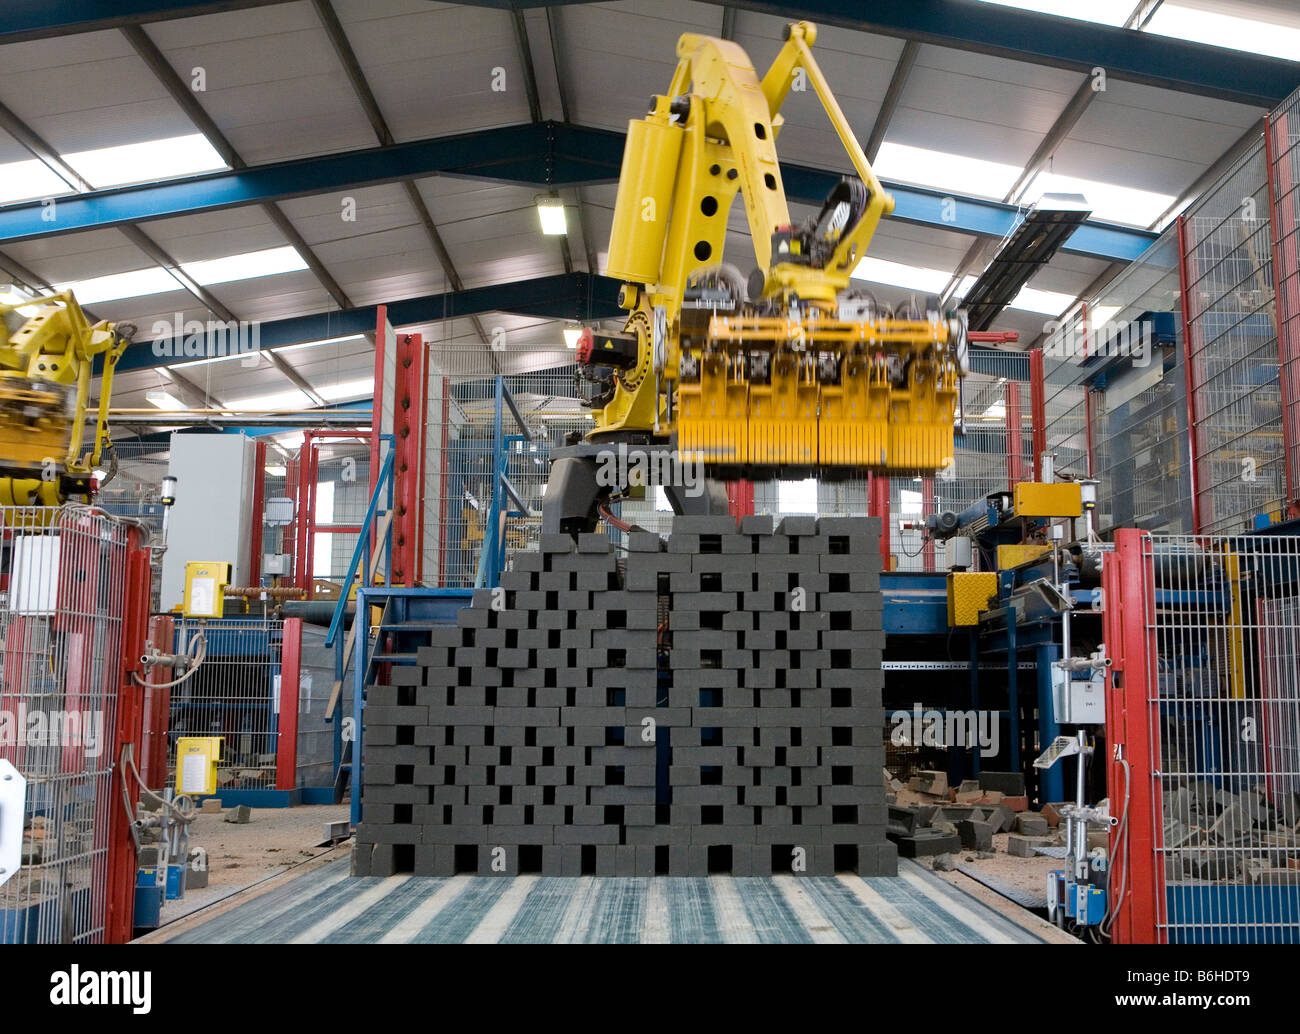 Ein Roboterarm bewegt sich London Ziegel, wie sie aus der Produktion am Standort Könige Dyke Hanson Ziegelei in der Nähe von Pete kommen Stockfoto